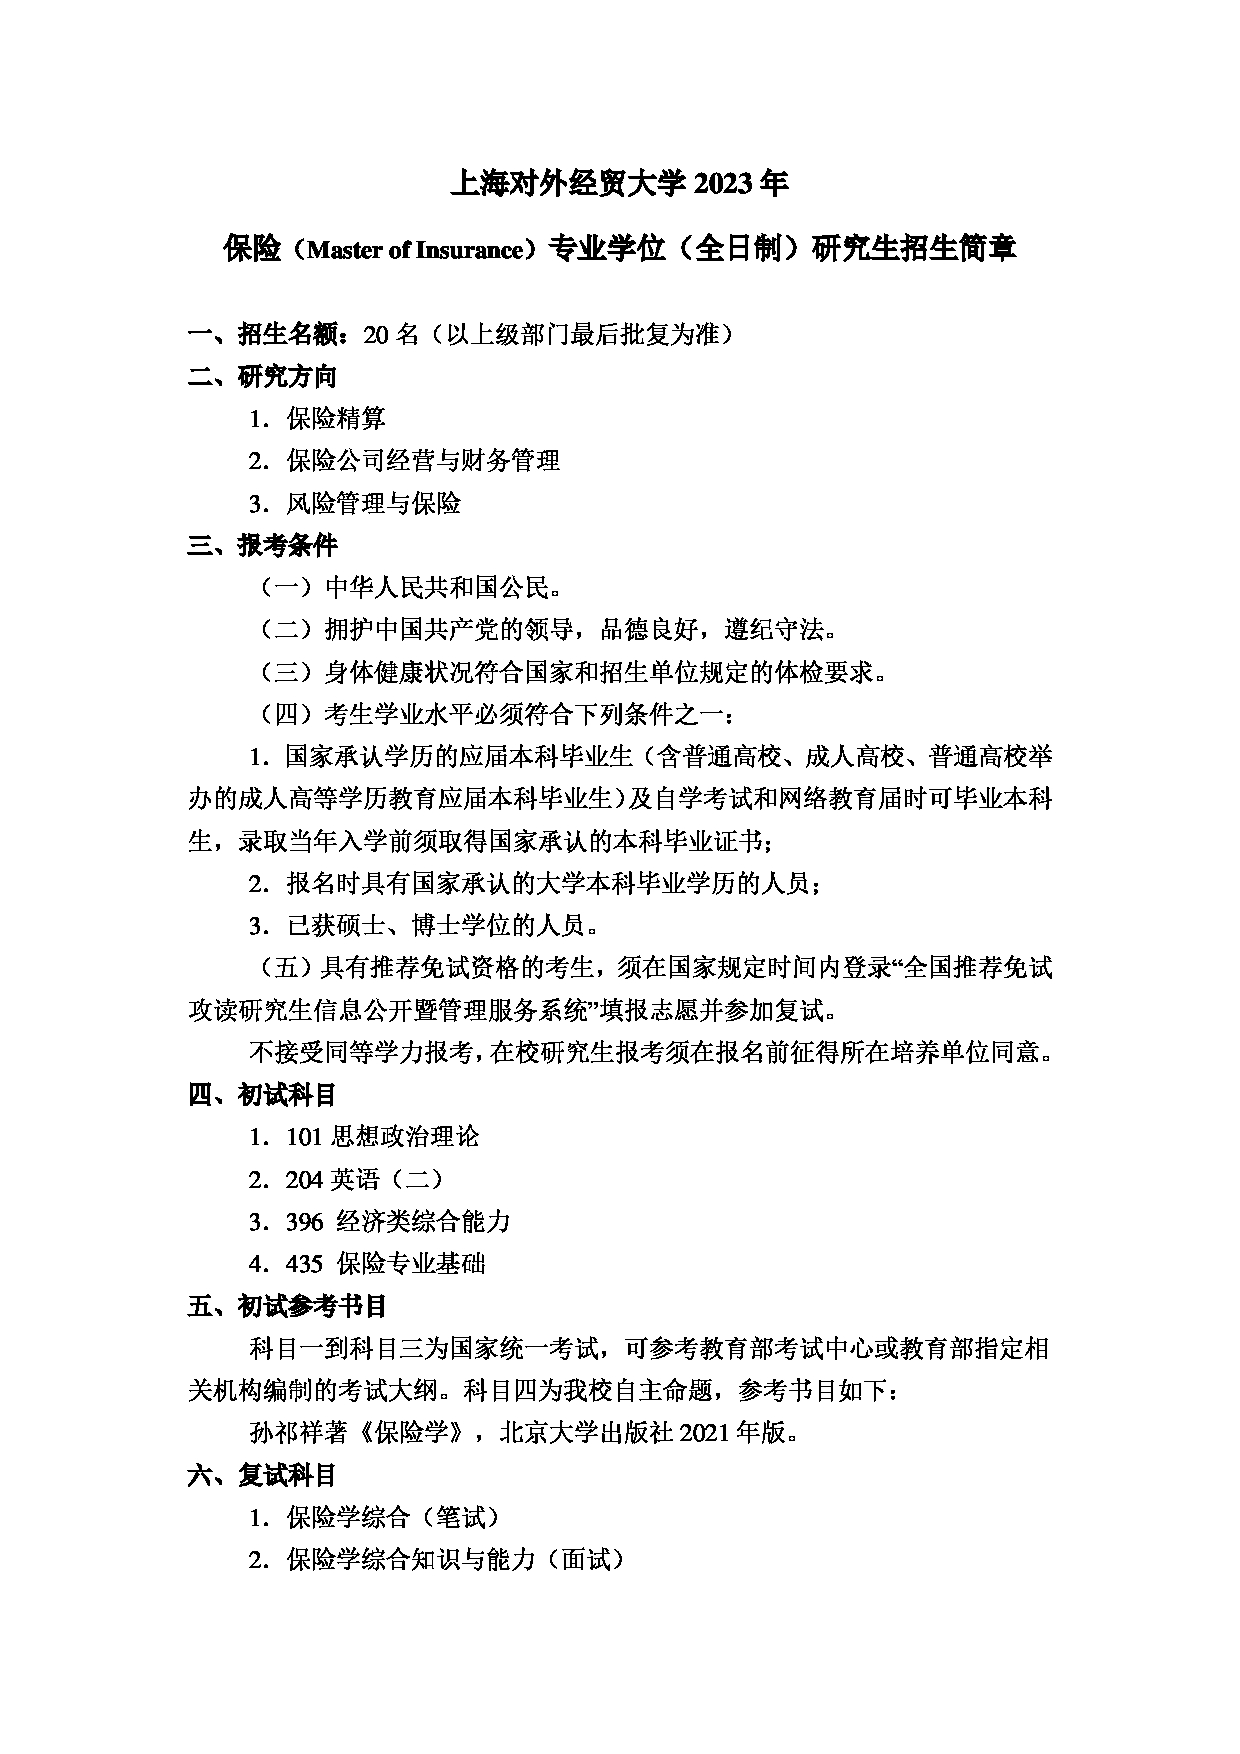 2023招生简章：上海对外经贸大学2023年保险专业学位硕士研究生招生简章第1页